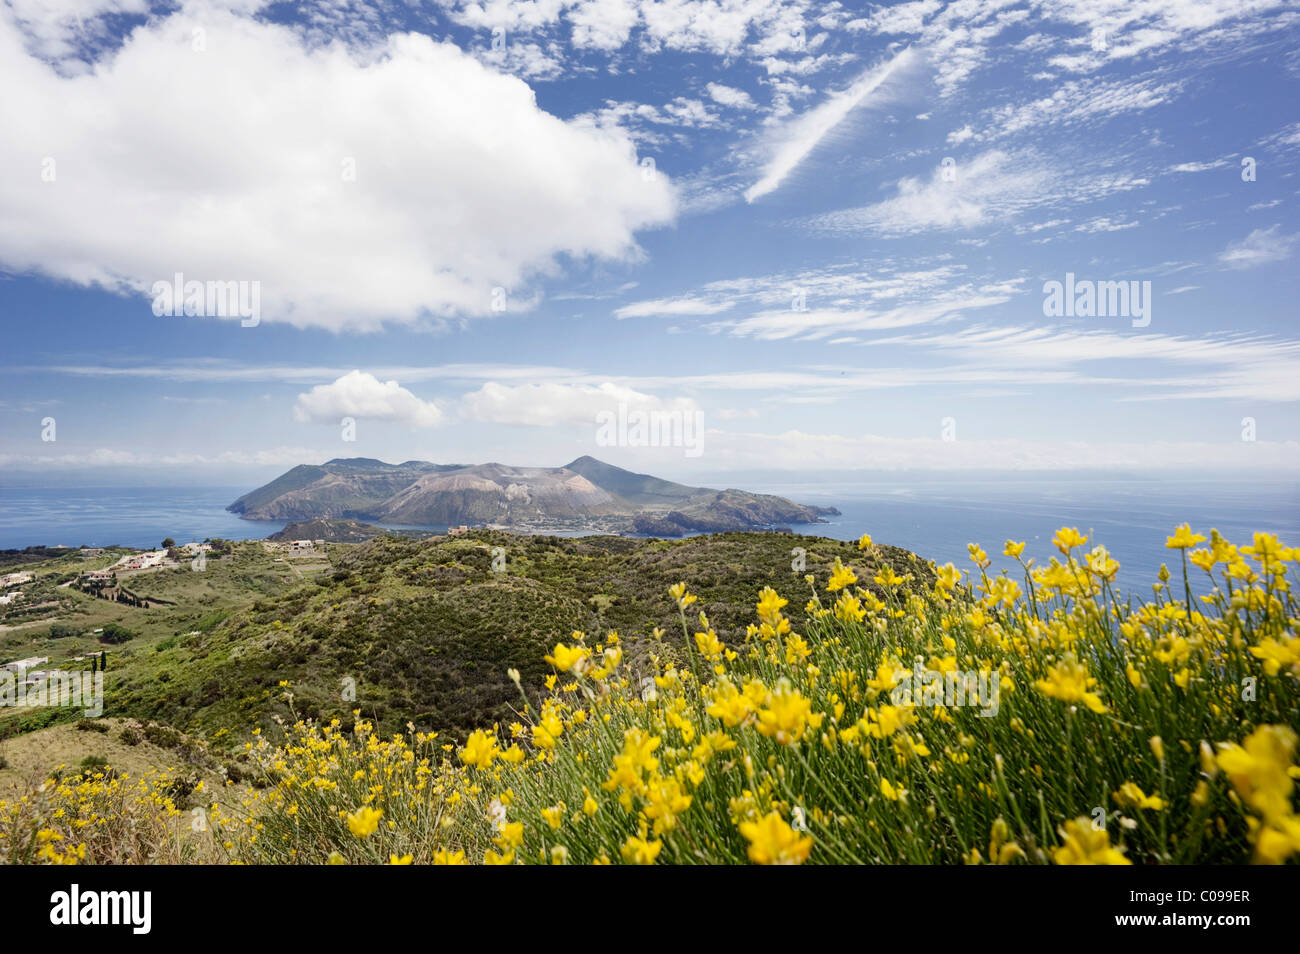 Genêts en fleur (Genista) sur l'île de Lipari, sur l'horizon l'île de Vulcano, Sicile, Italie, Europe Banque D'Images